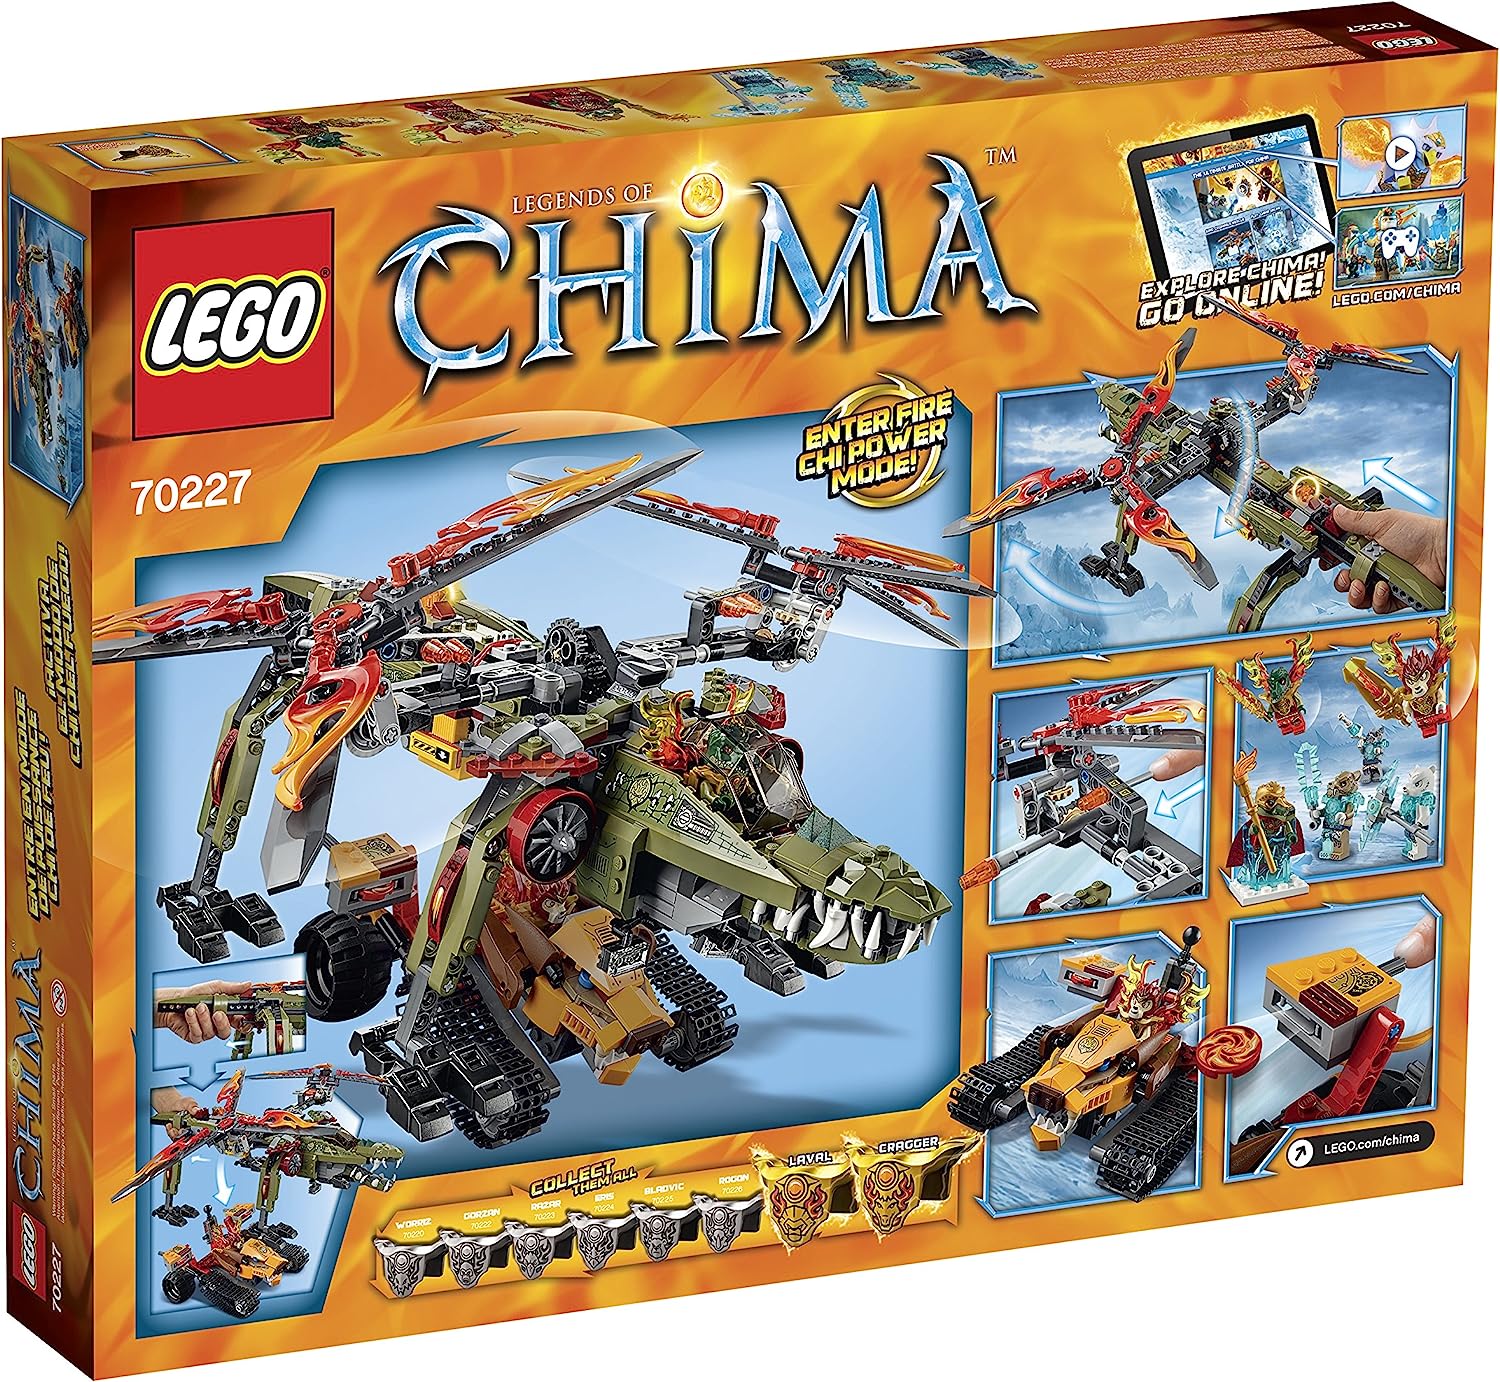 【楽天市場】レゴ チーマ 6099912 LEGO Legends of Chima 70227 